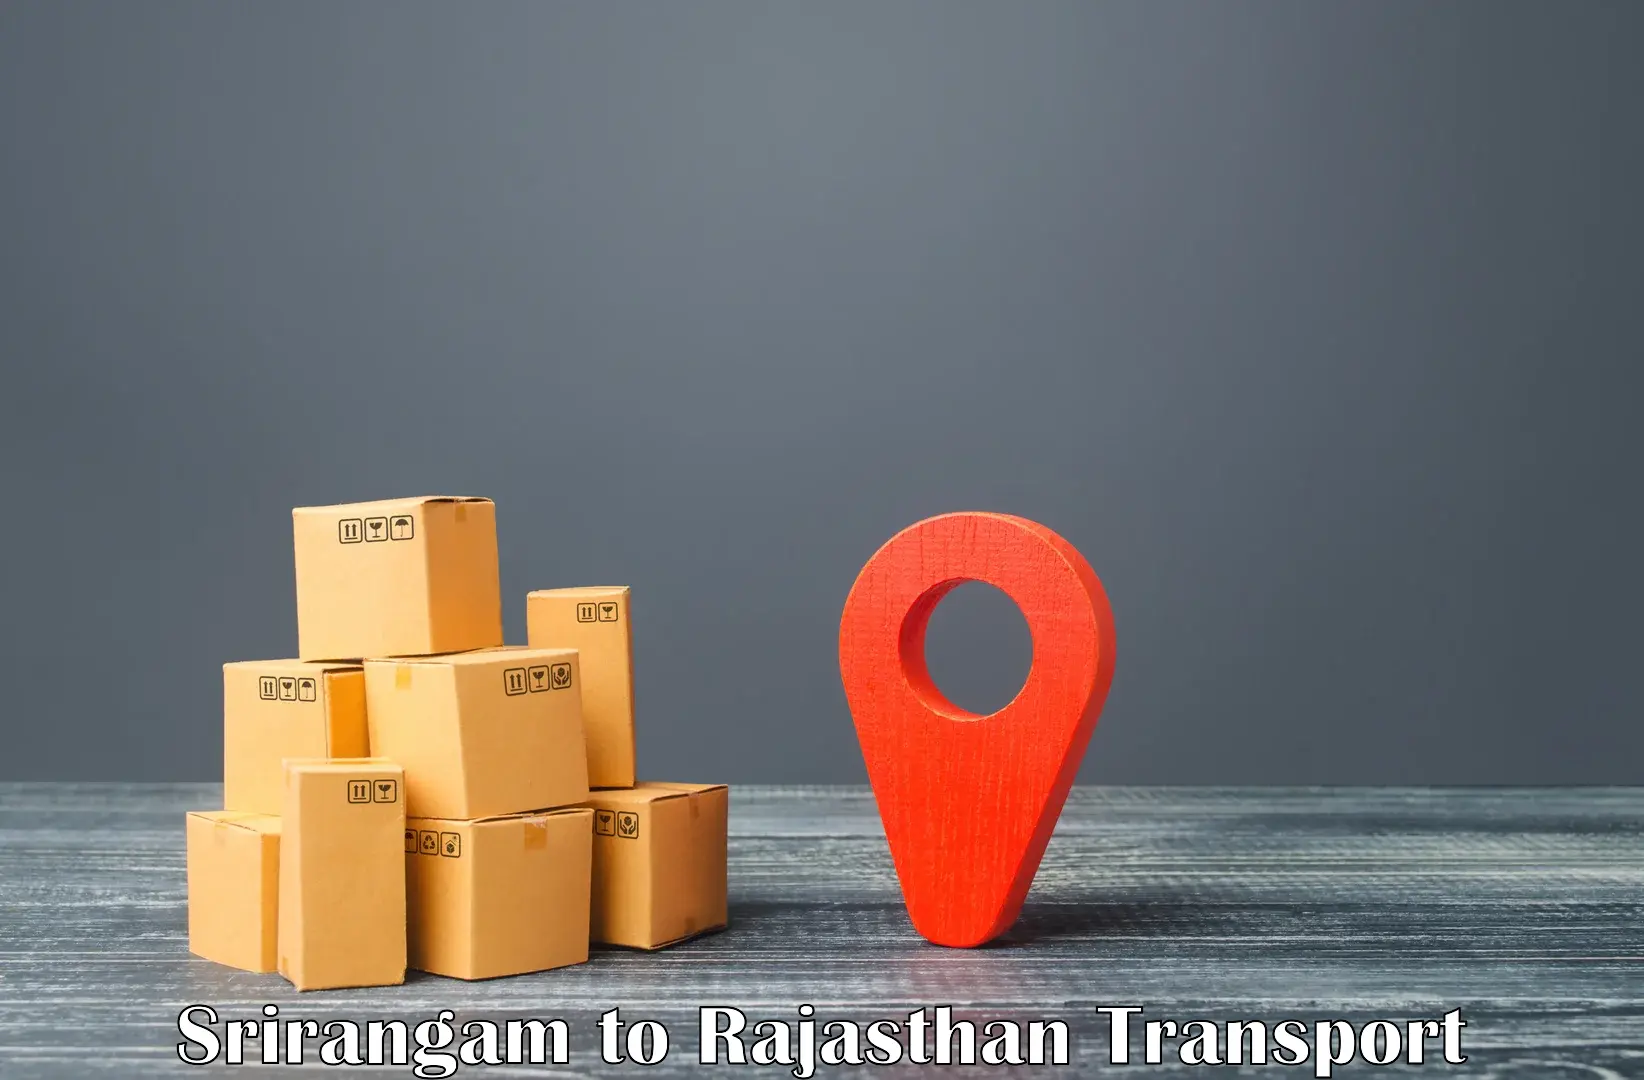 Intercity goods transport in Srirangam to Kumbhalgarh